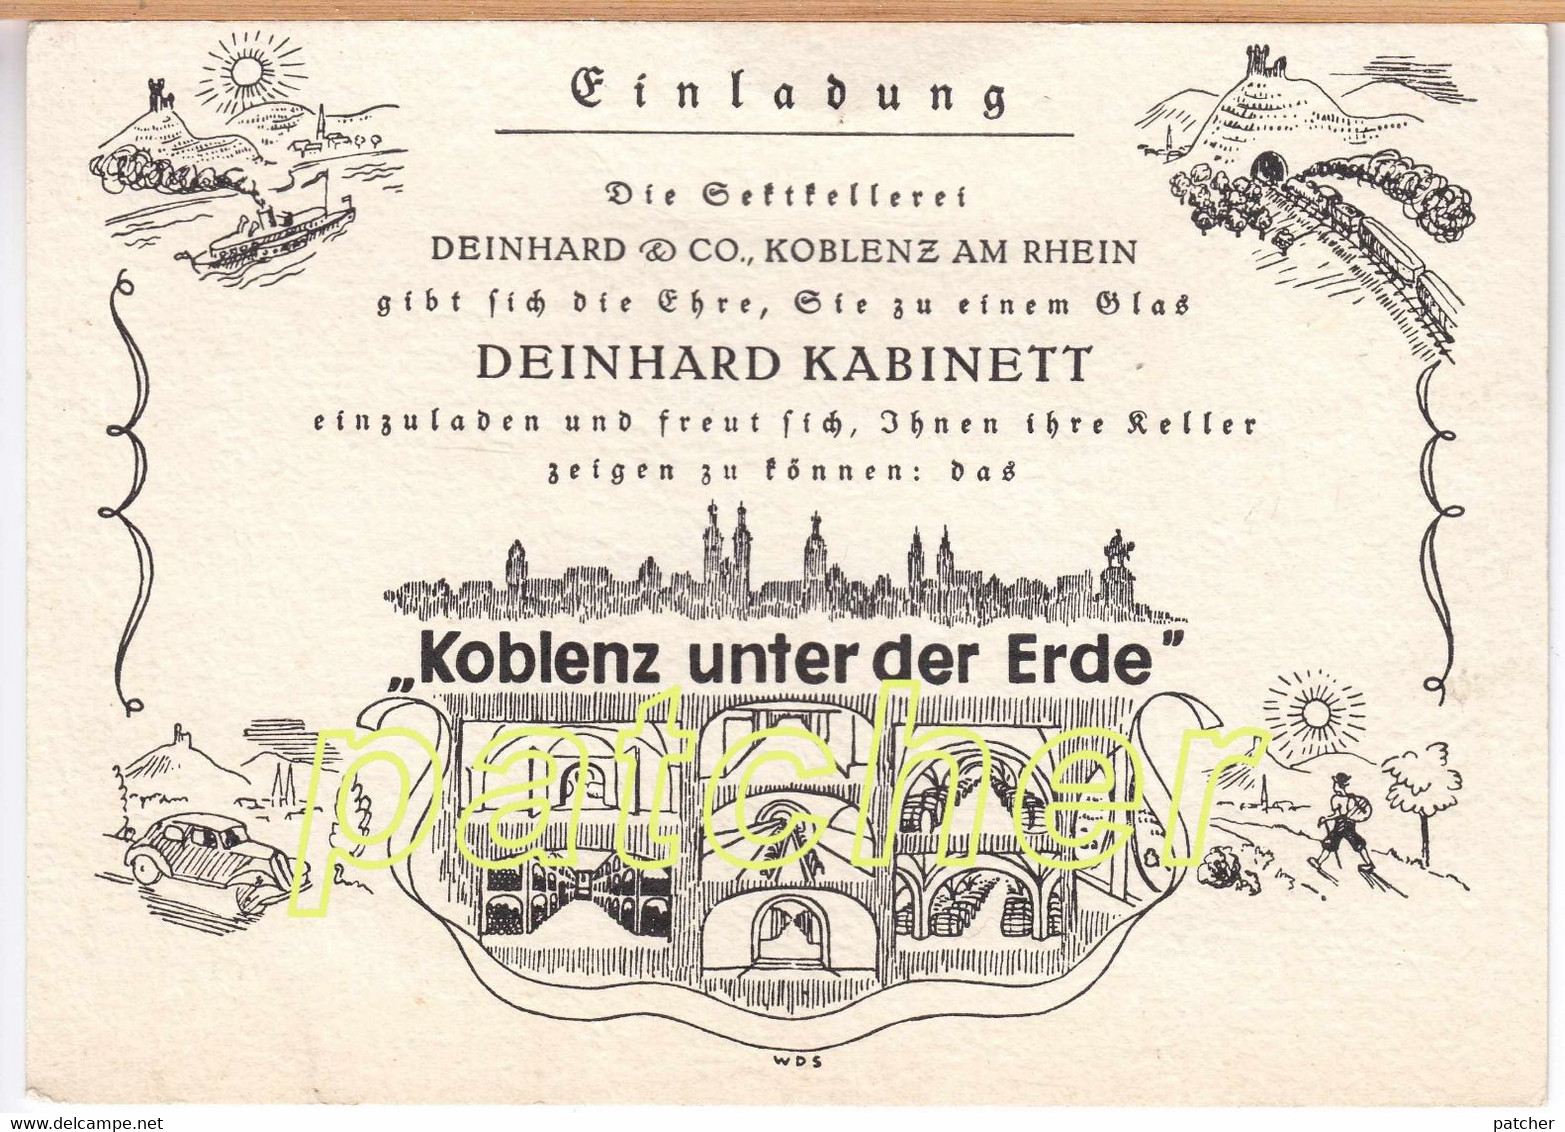 Einladungskarte Sektkellerei Deinhard & Co., Koblenz Unter Der Erde, Um 1930 - Advertising